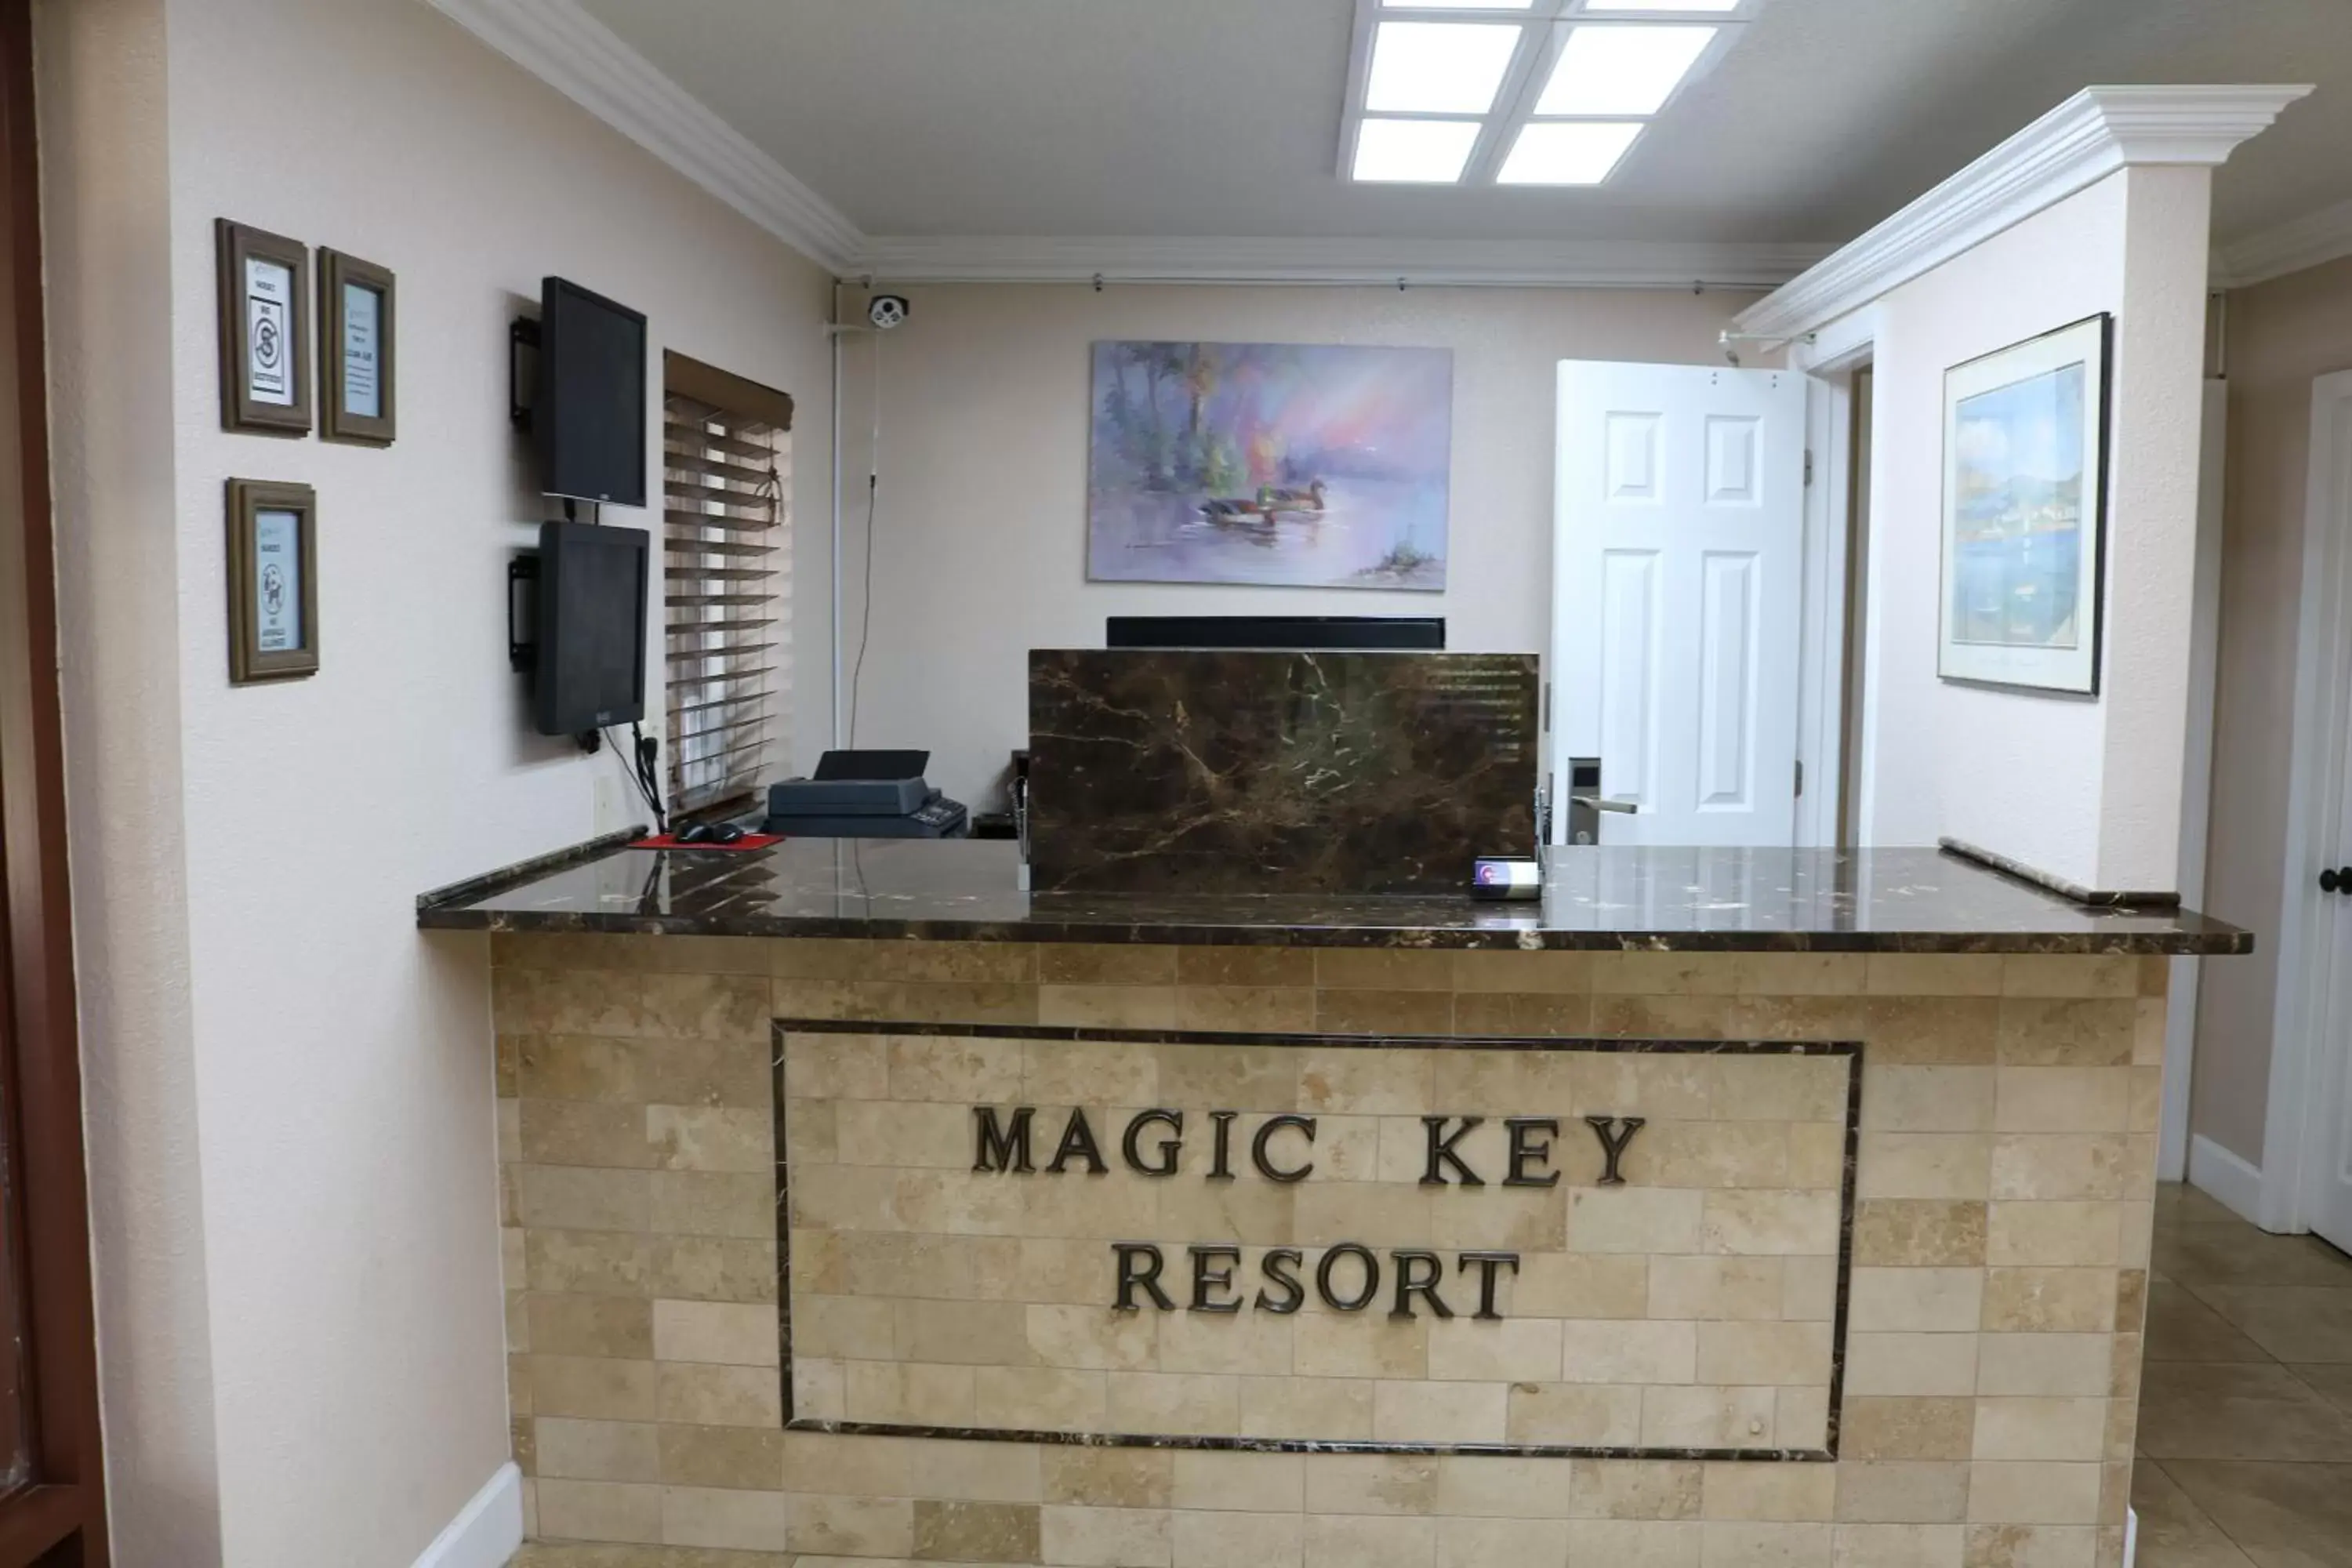 Lobby or reception, Lobby/Reception in Magic Key - Near Disney